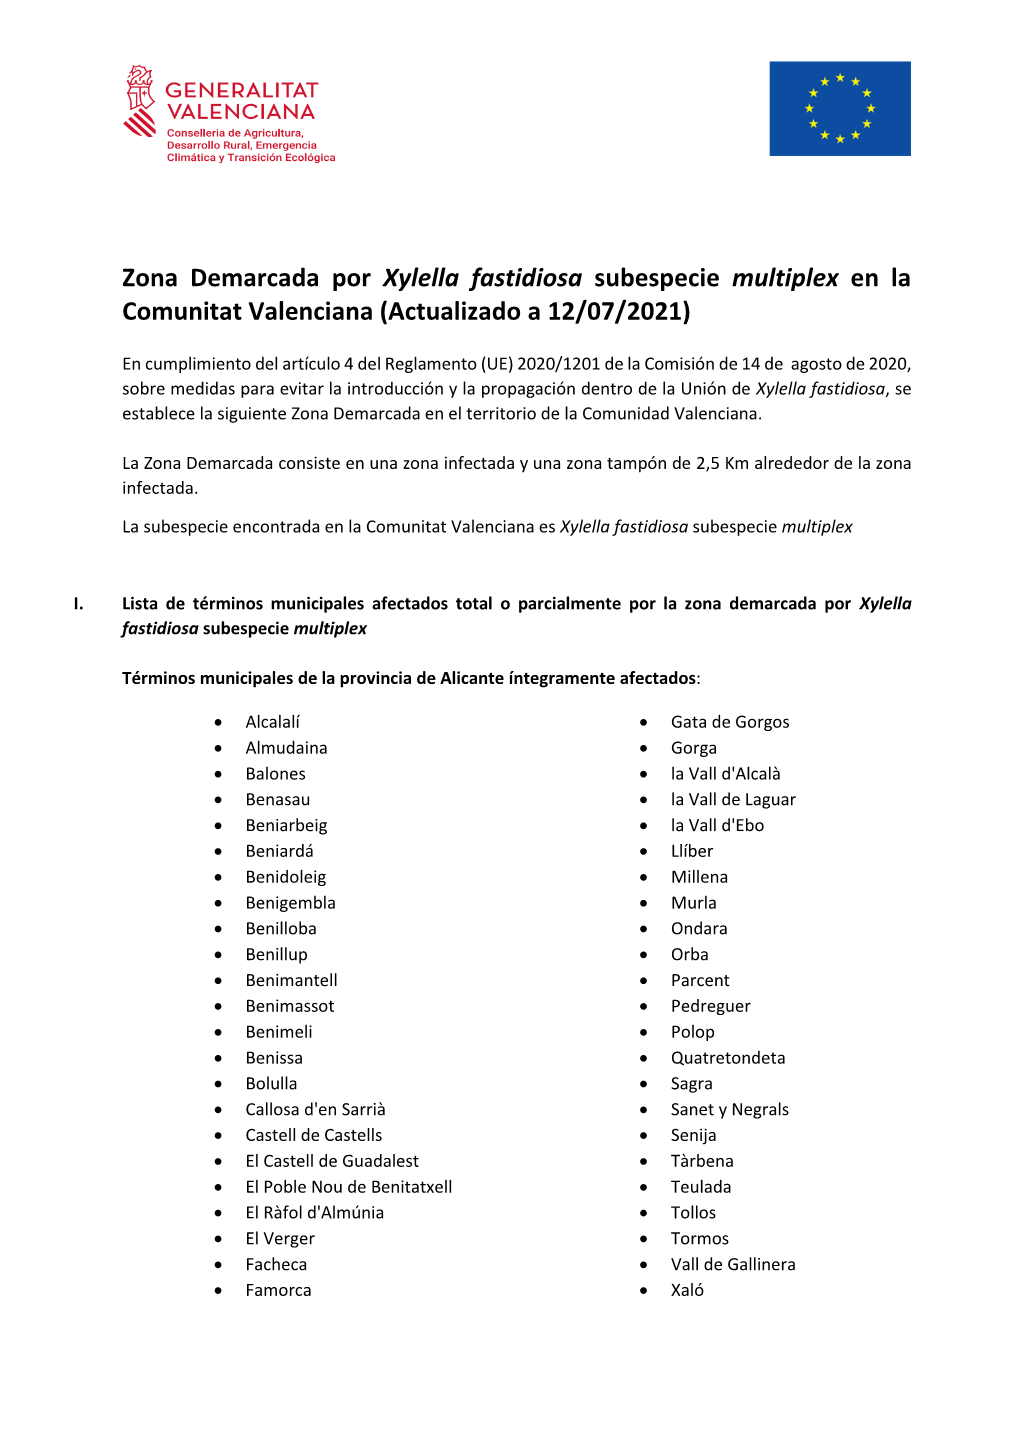 Zona Demarcada Por Xylella Fastidiosa Subespecie Multiplex En La Comunitat Valenciana (Actualizado a 12/07/2021)